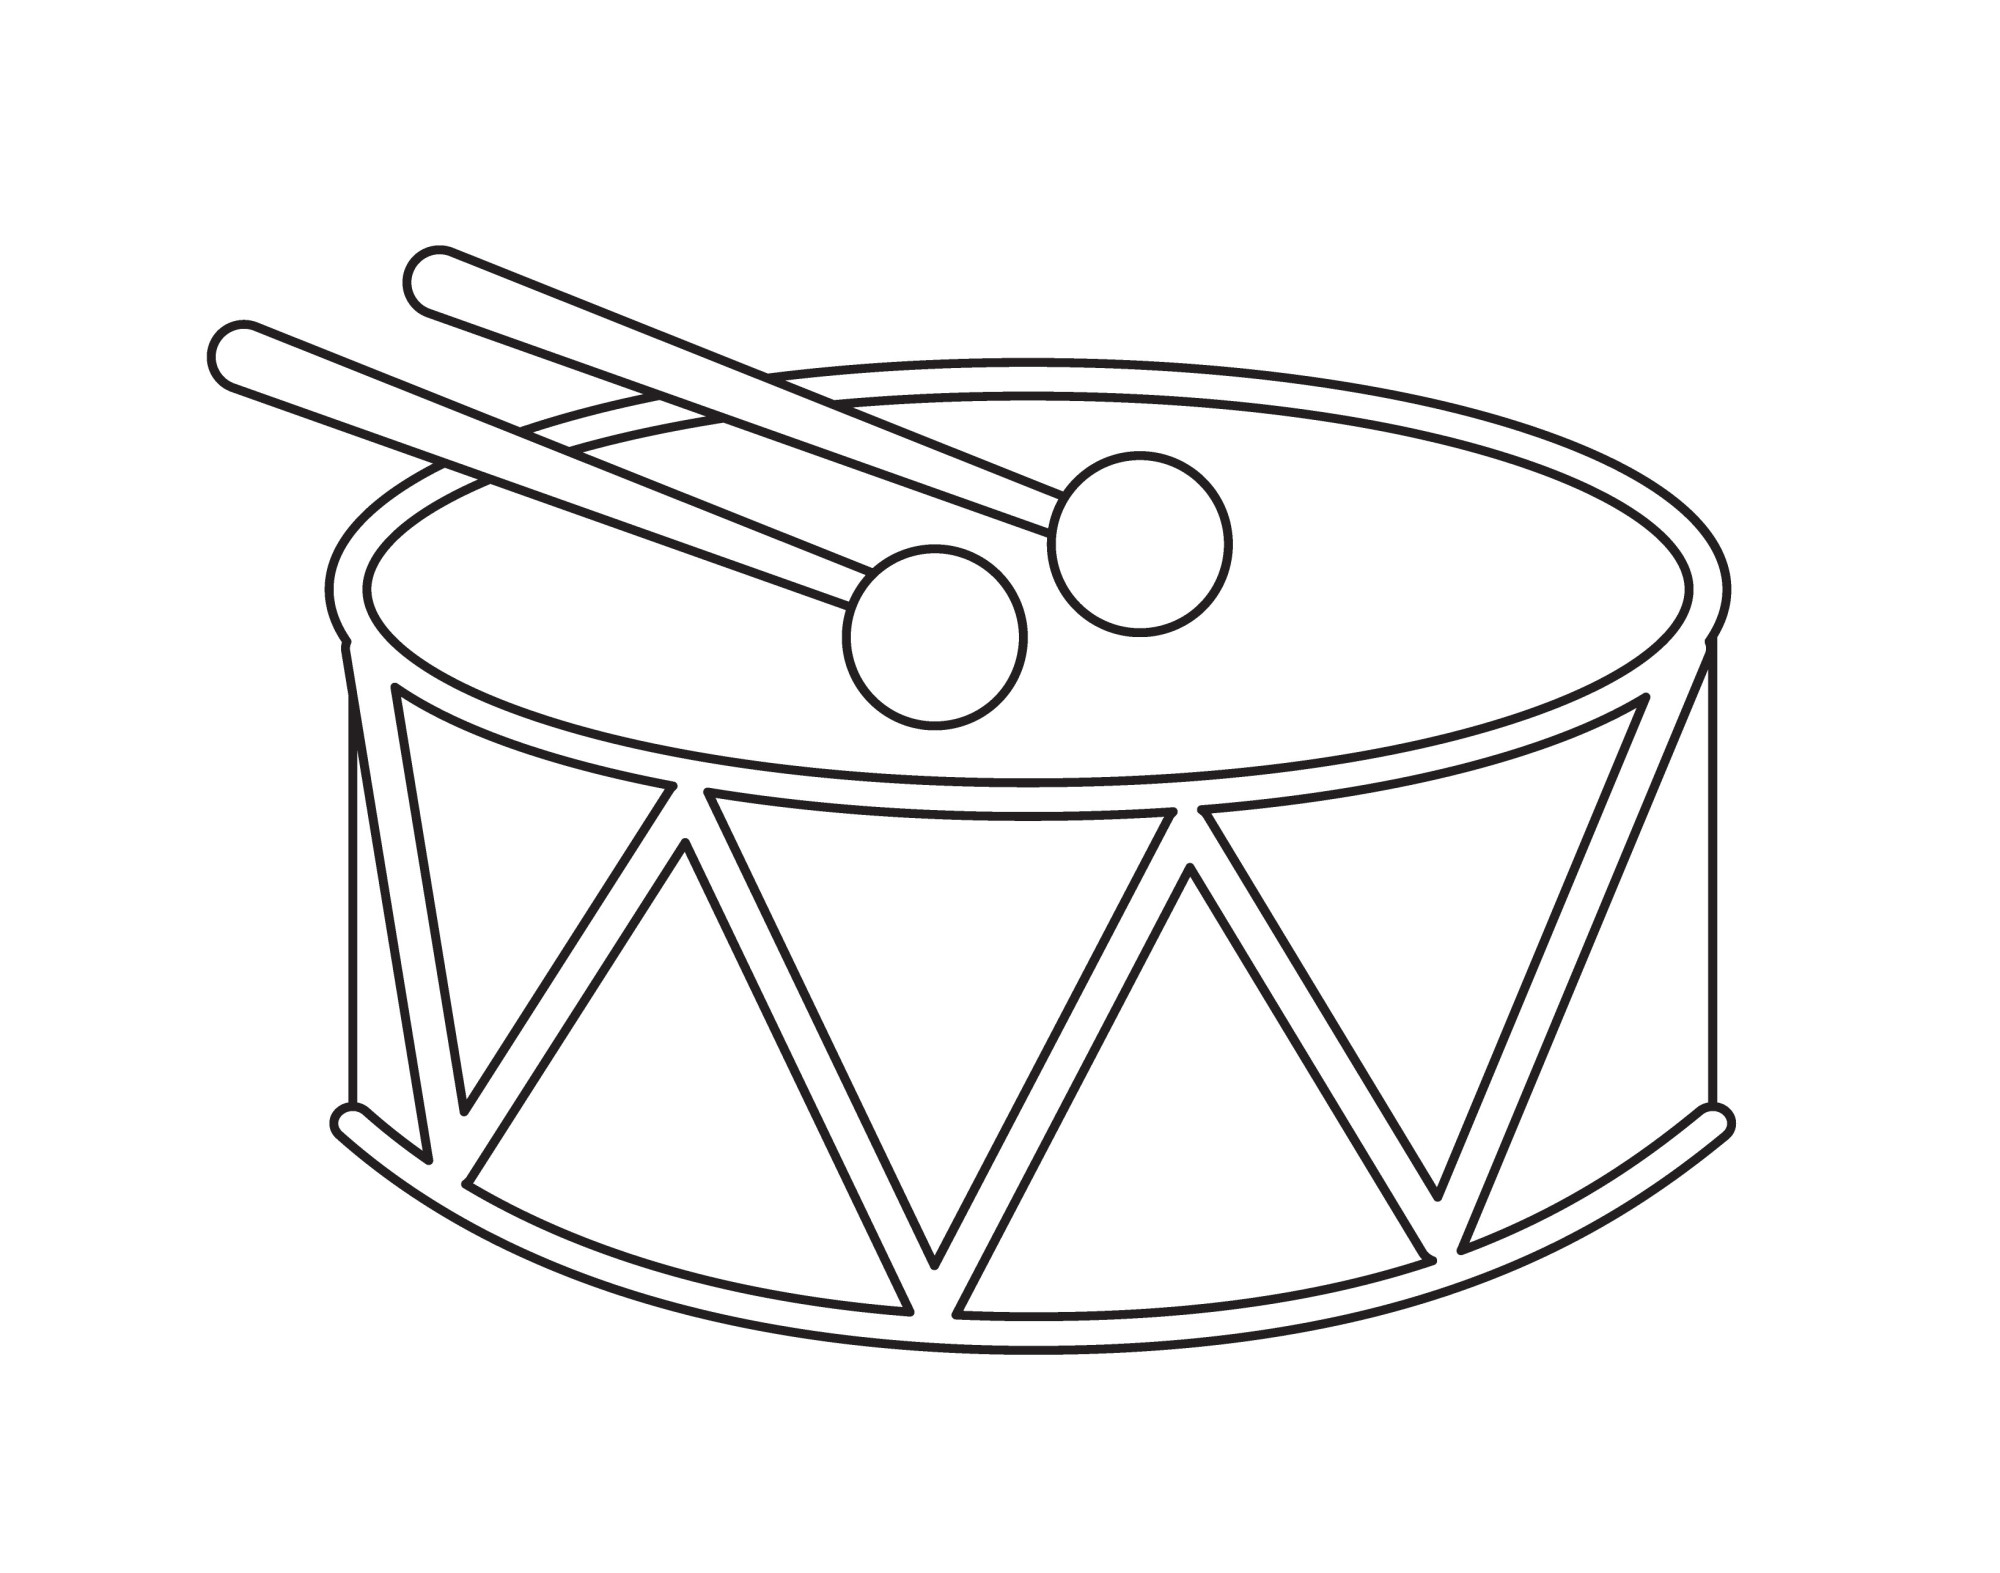 Раскраска для детей: детская игрушка барабан